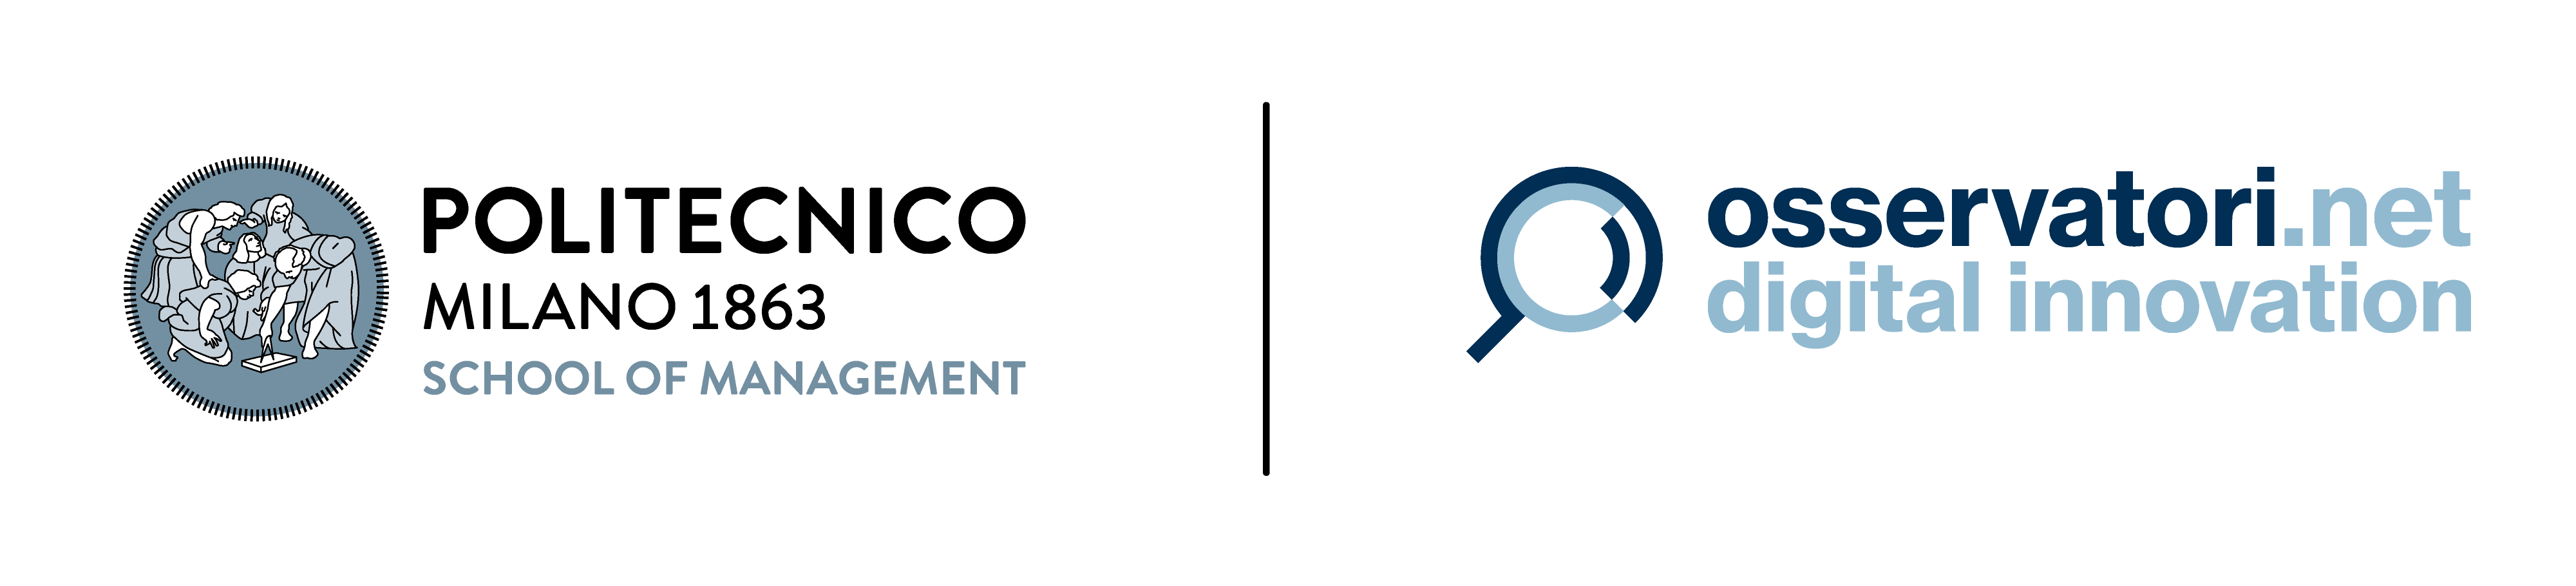 Immagine del logo dell'Osservatorio digitale del politecnico di Milano